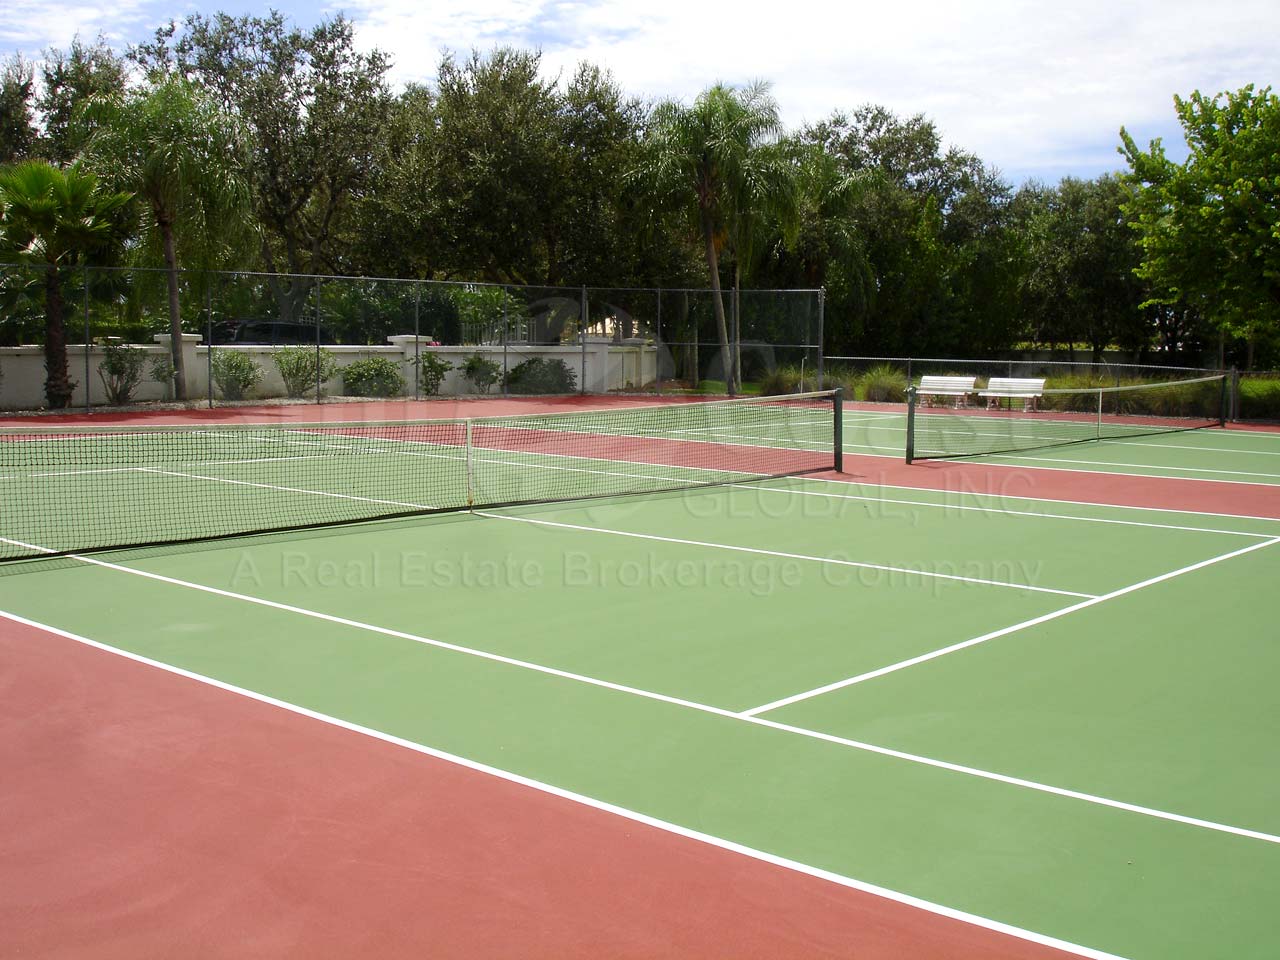 Twelve Oaks tennis courts